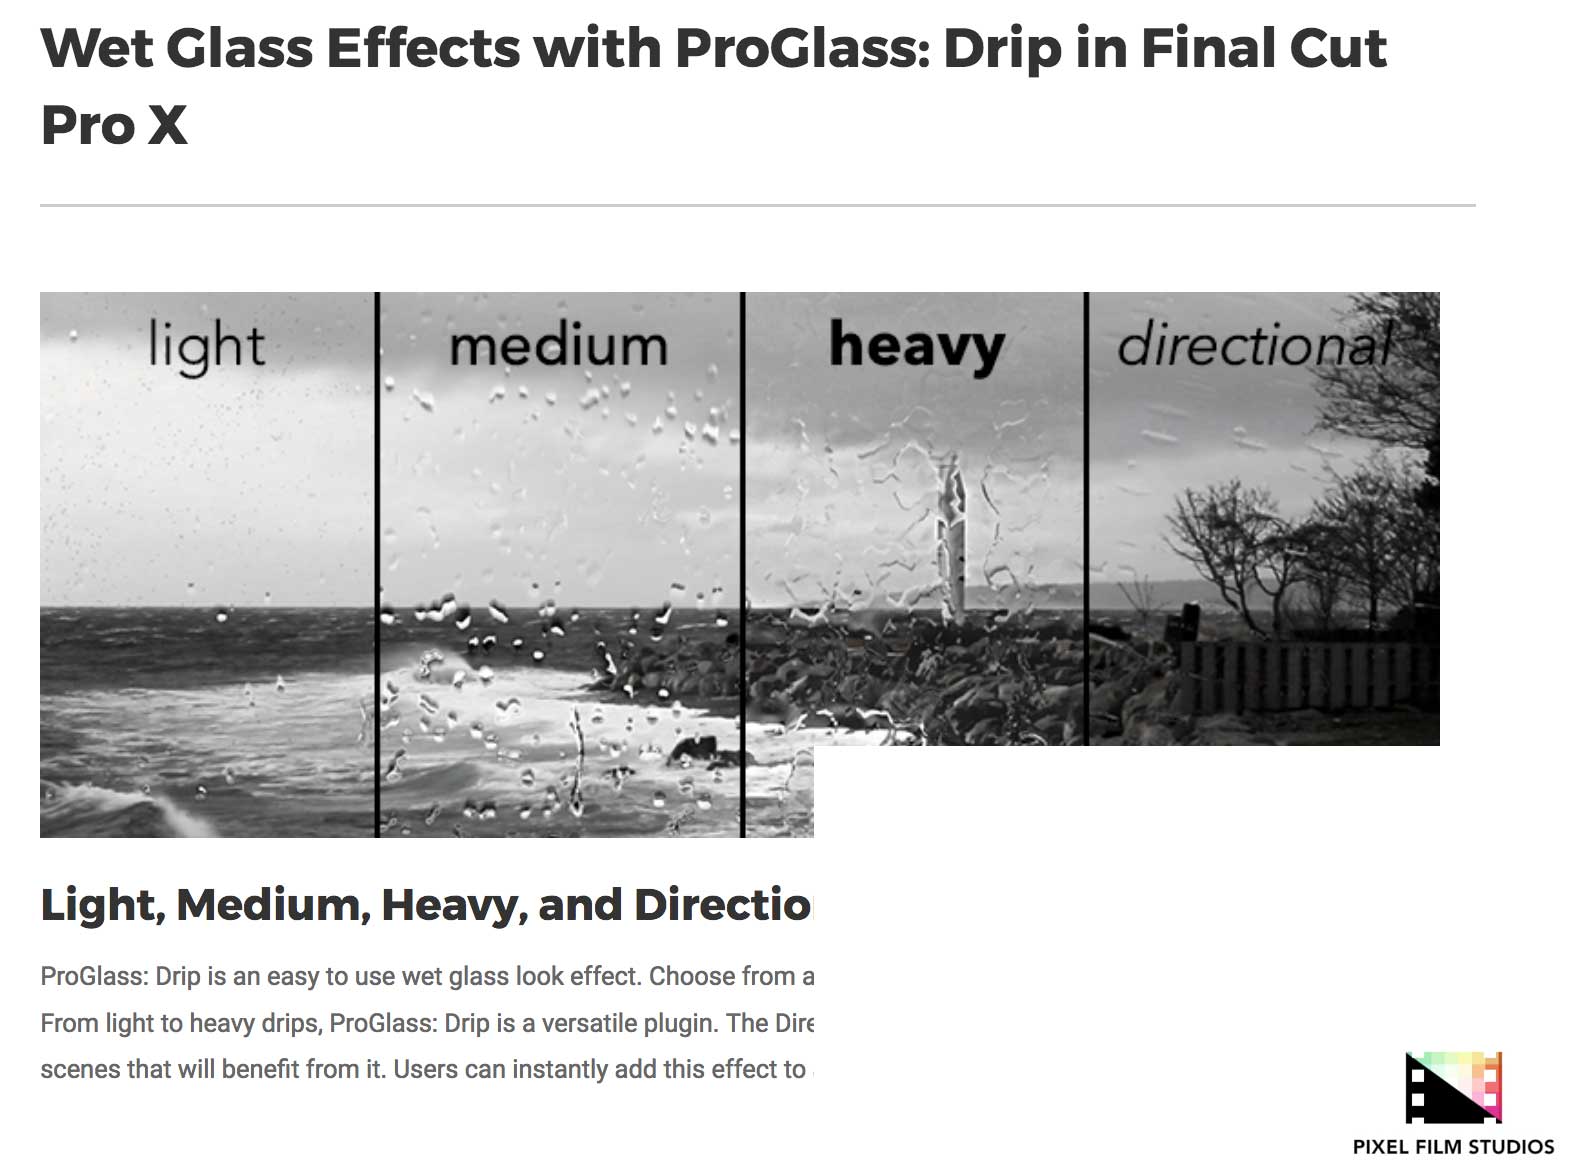 ProGlass Drip